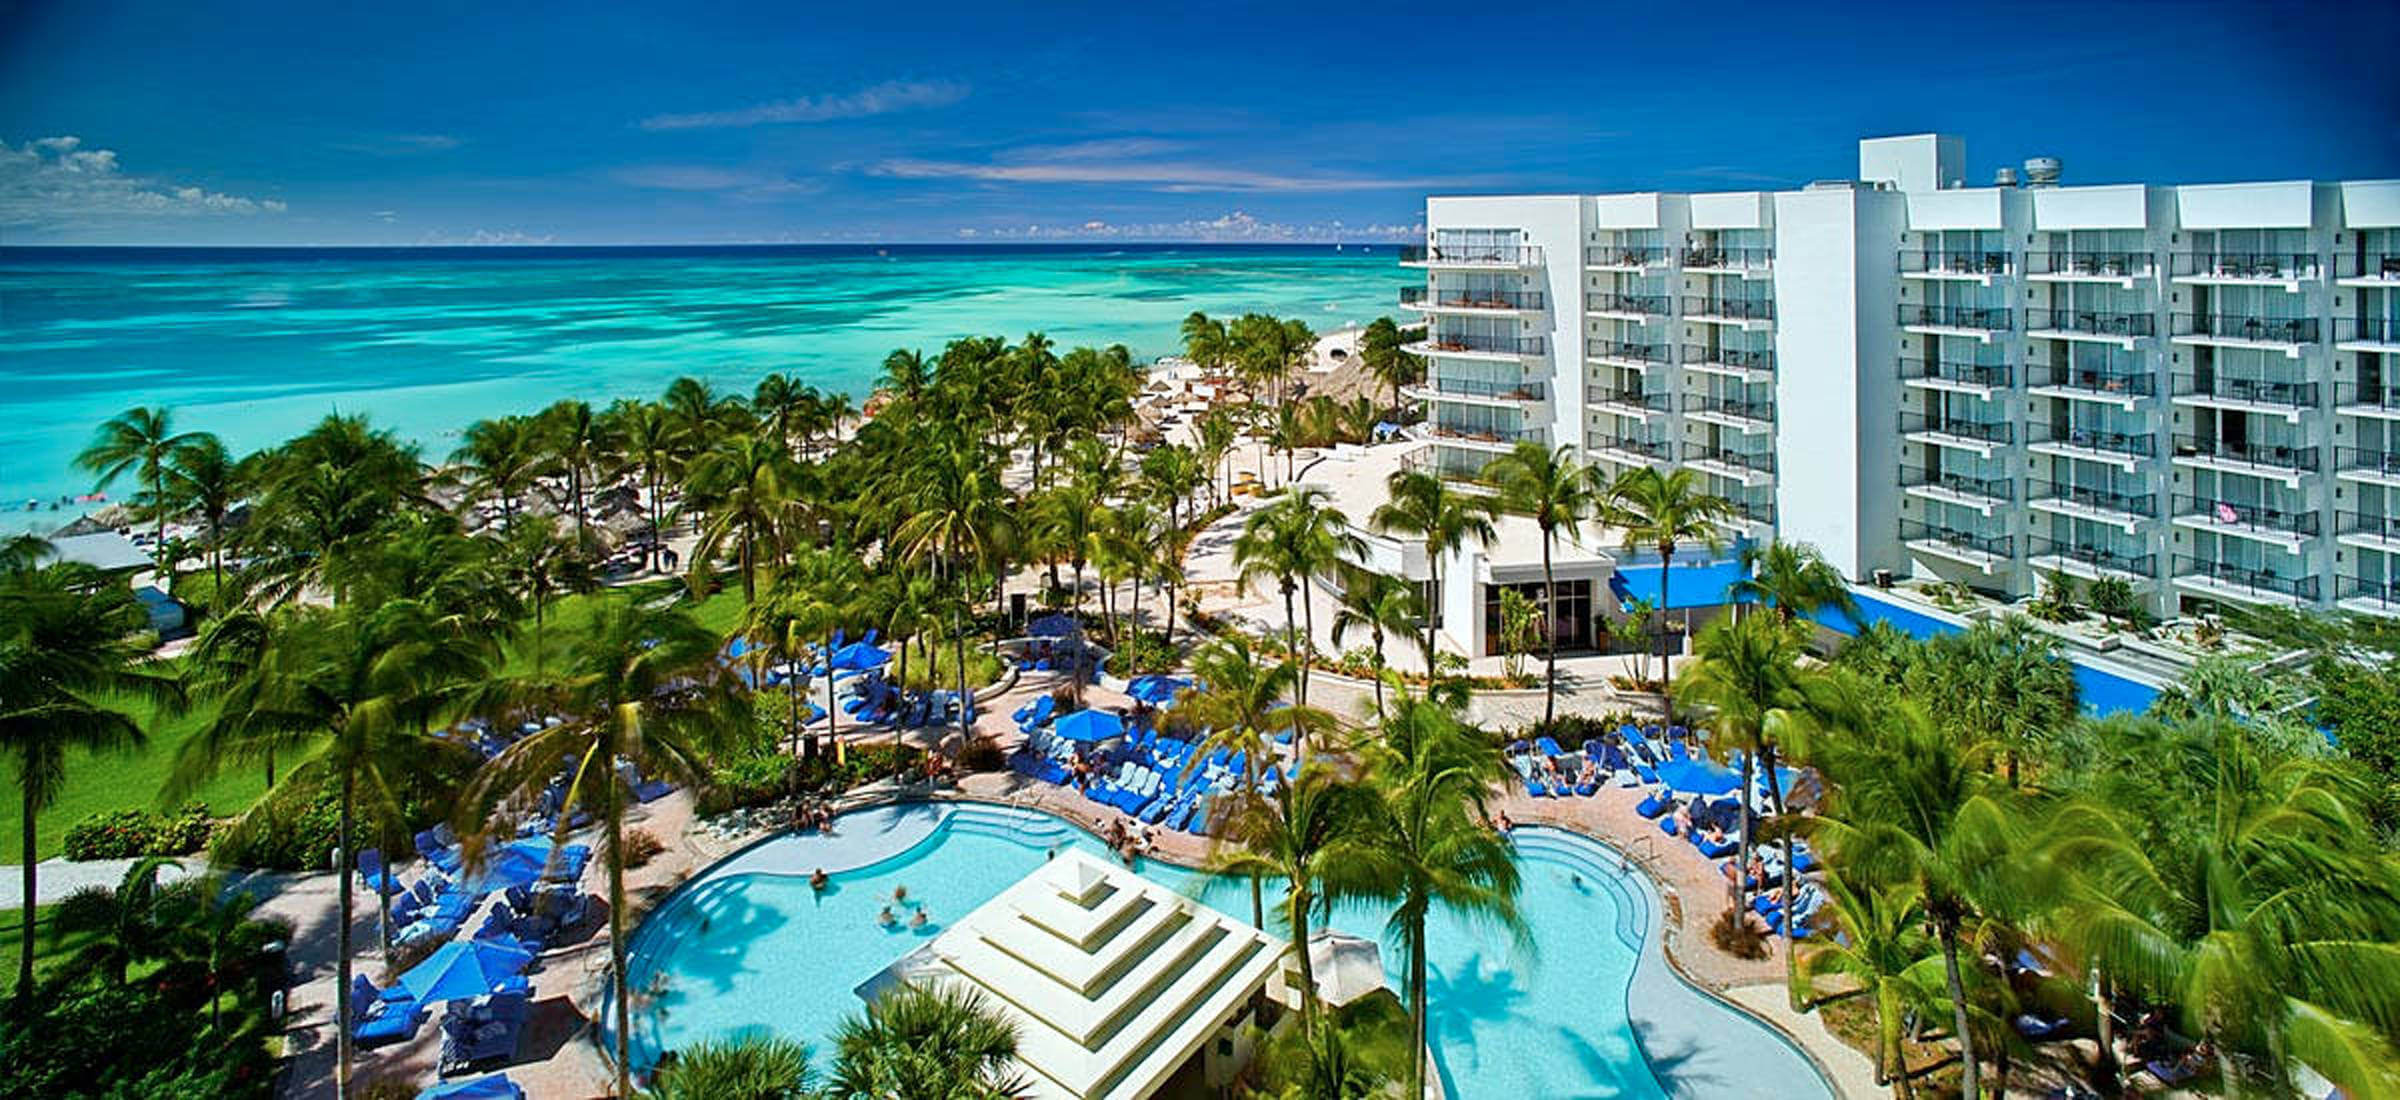 Aruba Marriott Resort & Stellaris Casino - Traveloni